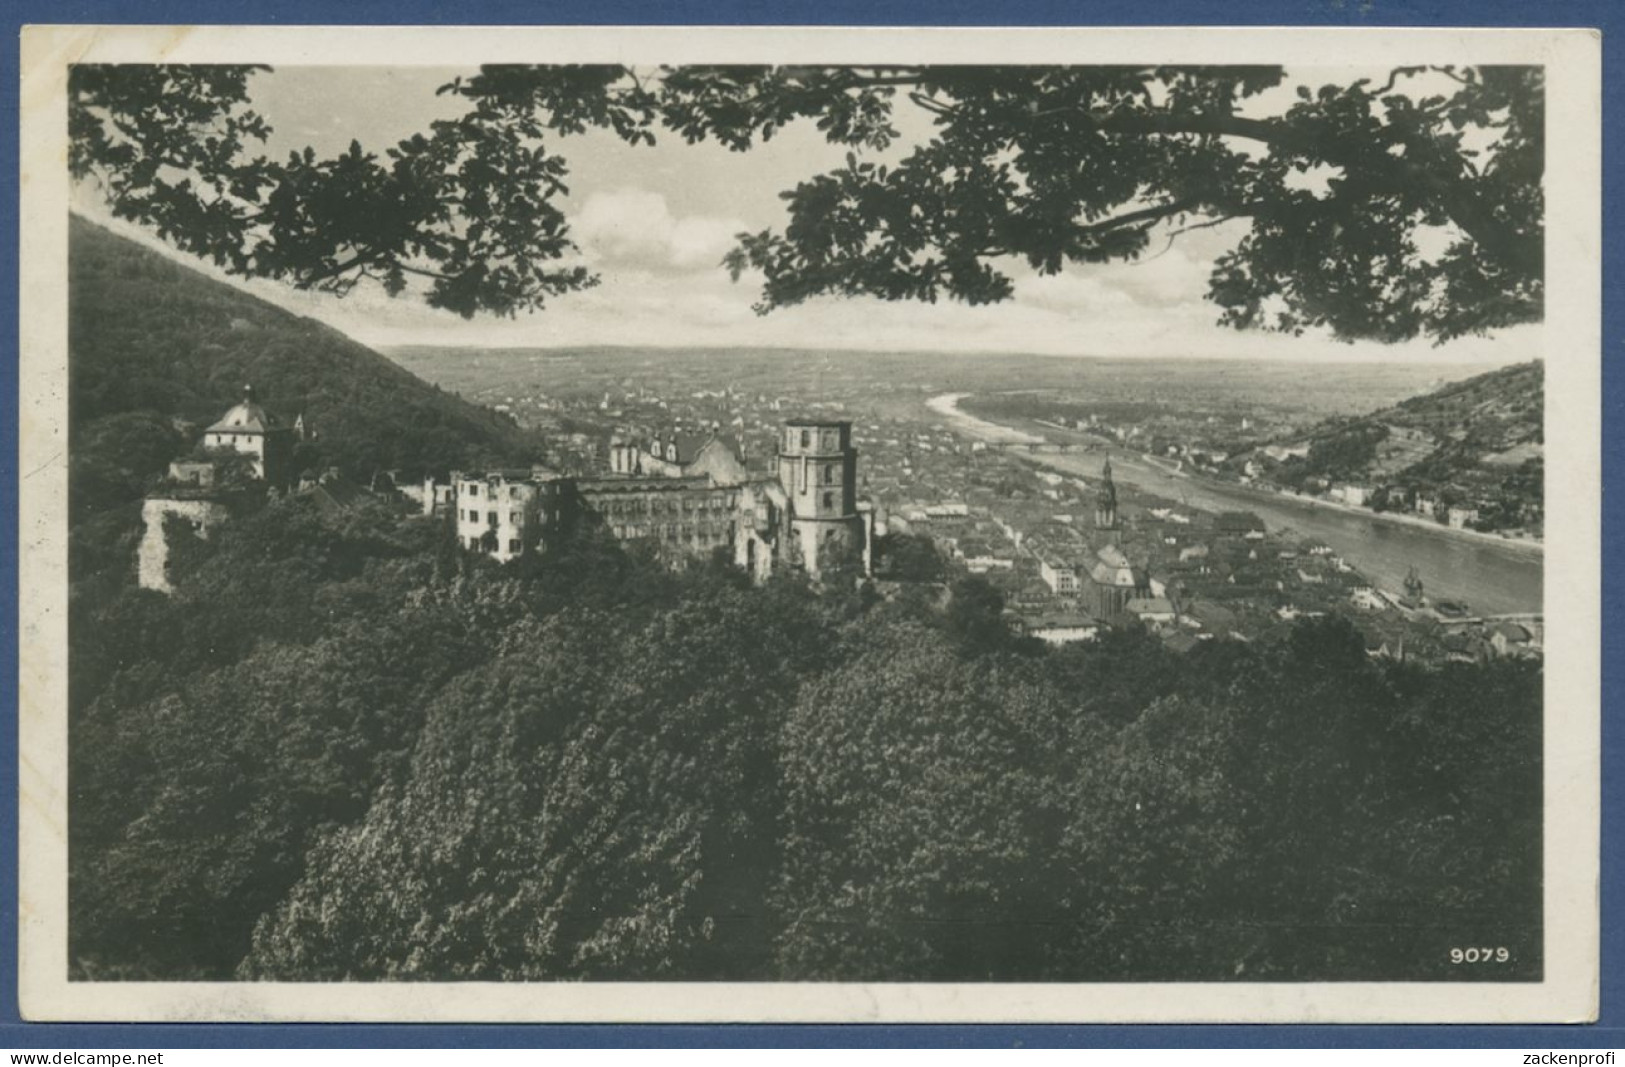 Heidelberg Blick Auf Schloß Und Stadt Foto, Gelaufen 1931 (AK1904) - Heidelberg